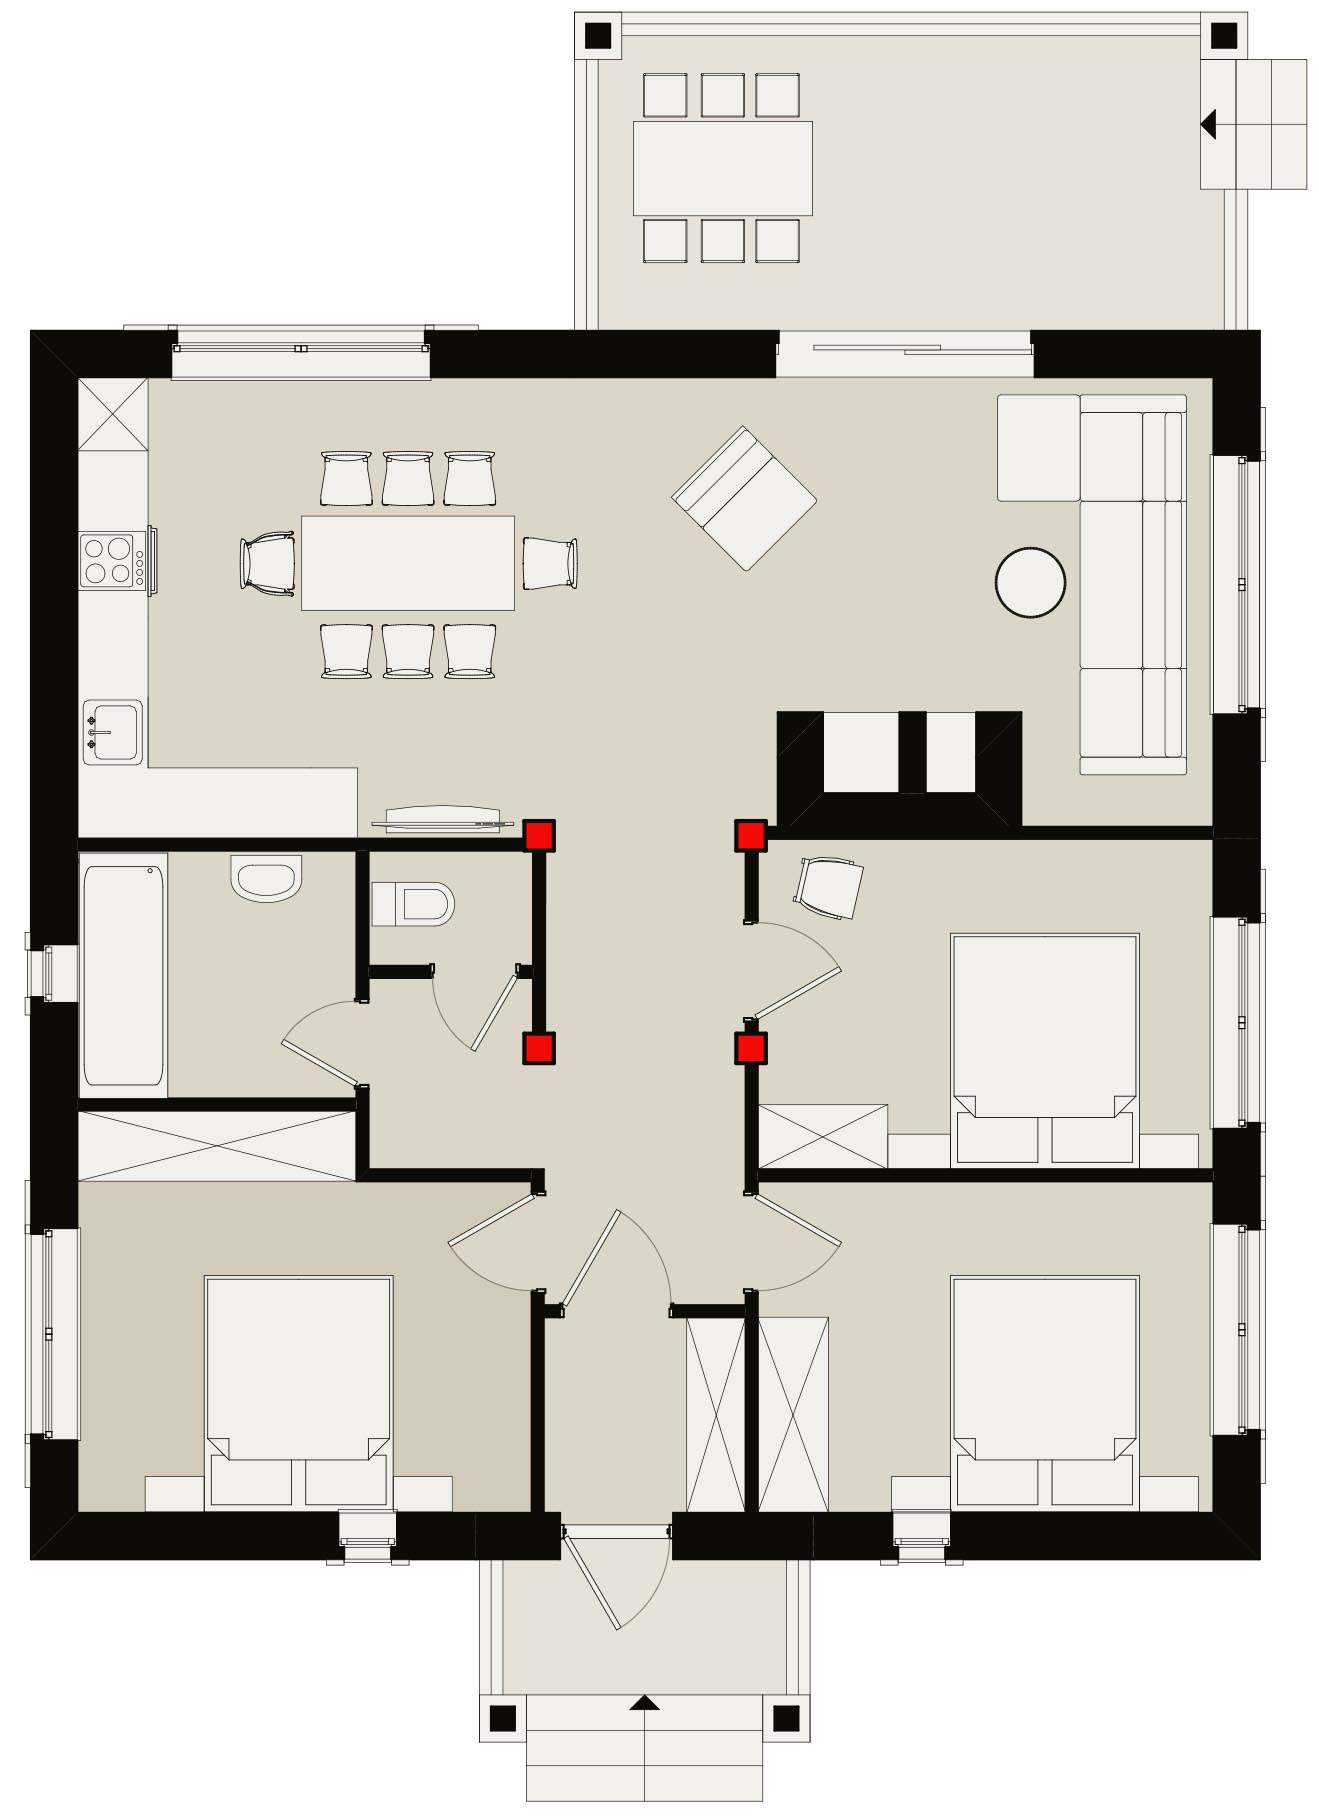 вариант плана 10х10 метров с большой комнатой и раздельным санузлом